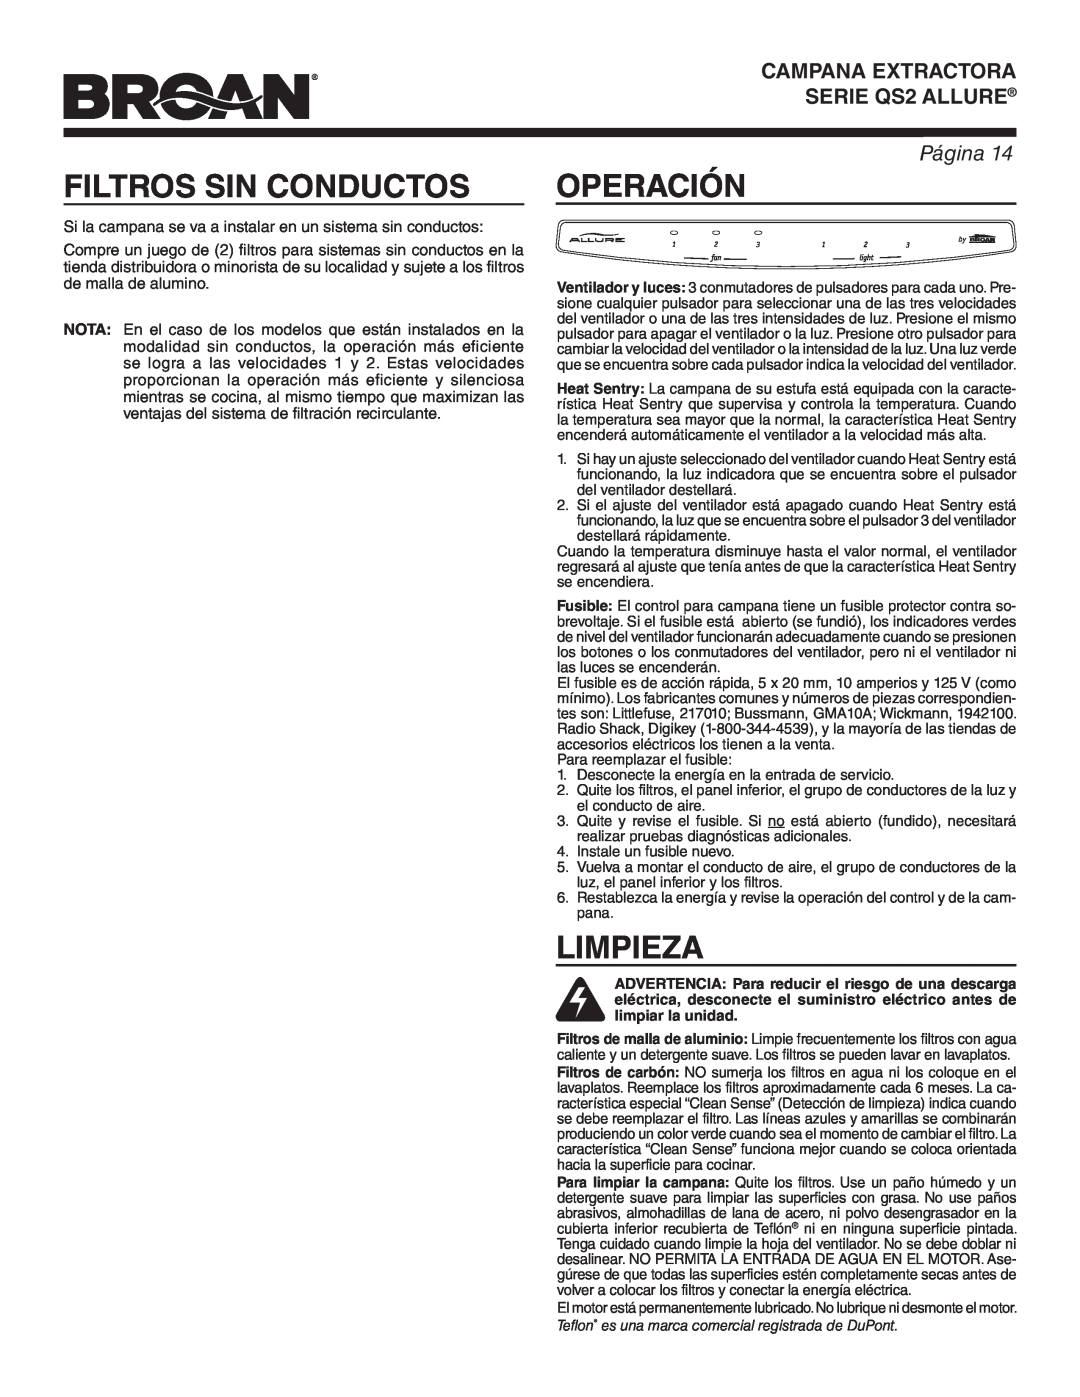 Broan QS242SS warranty Filtros Sin Conductos, Operación, Limpieza, Página, CAMPANA EXTRACTORA SERIE QS2 ALLURE 